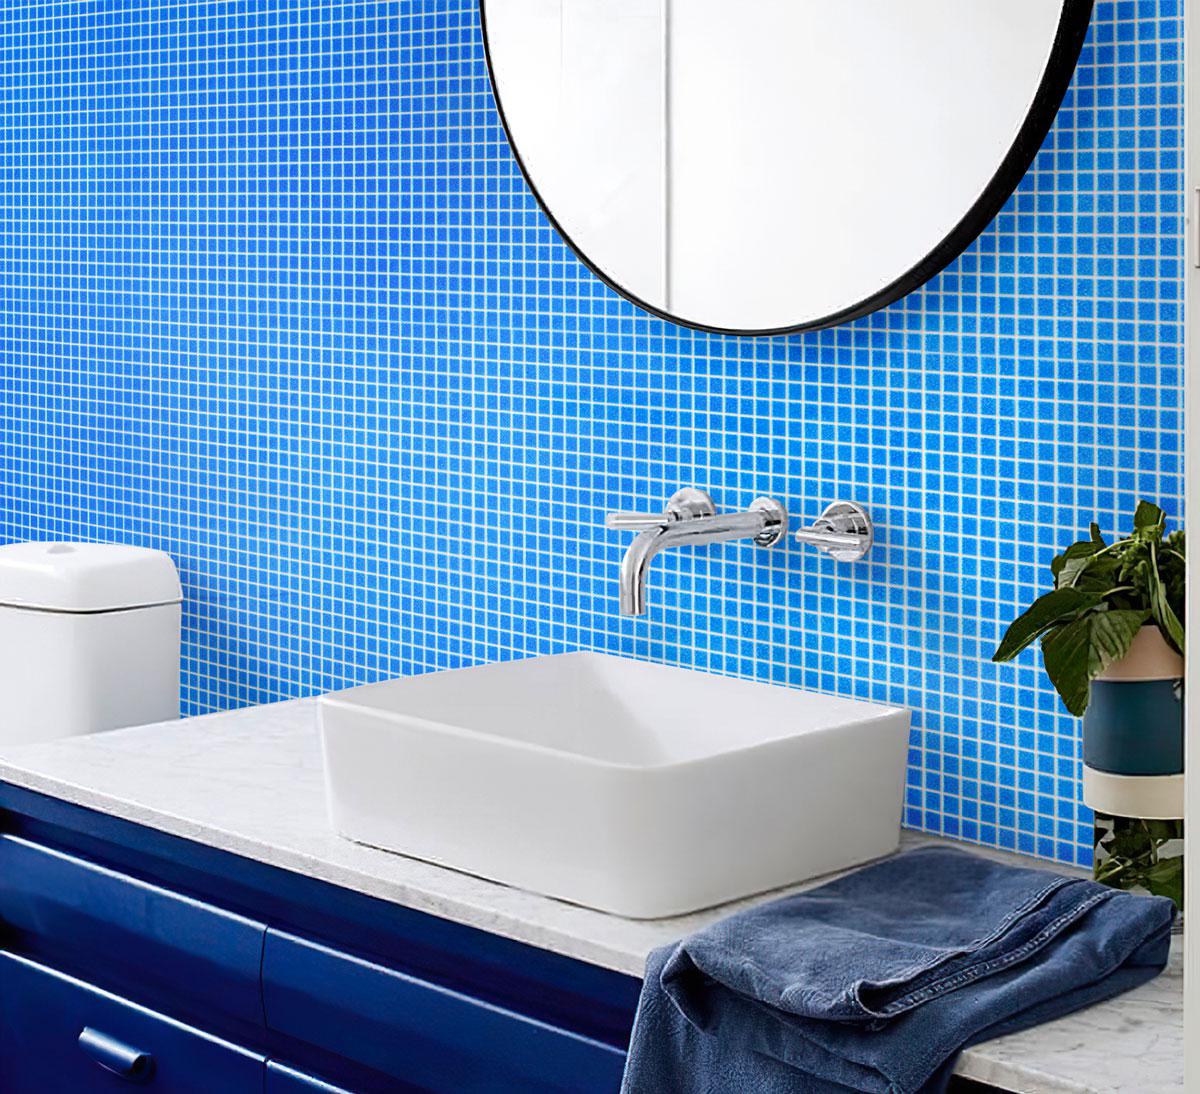 Speckled Cobalt Blue Squares Glass Pool Tile Bathroom Backsplash